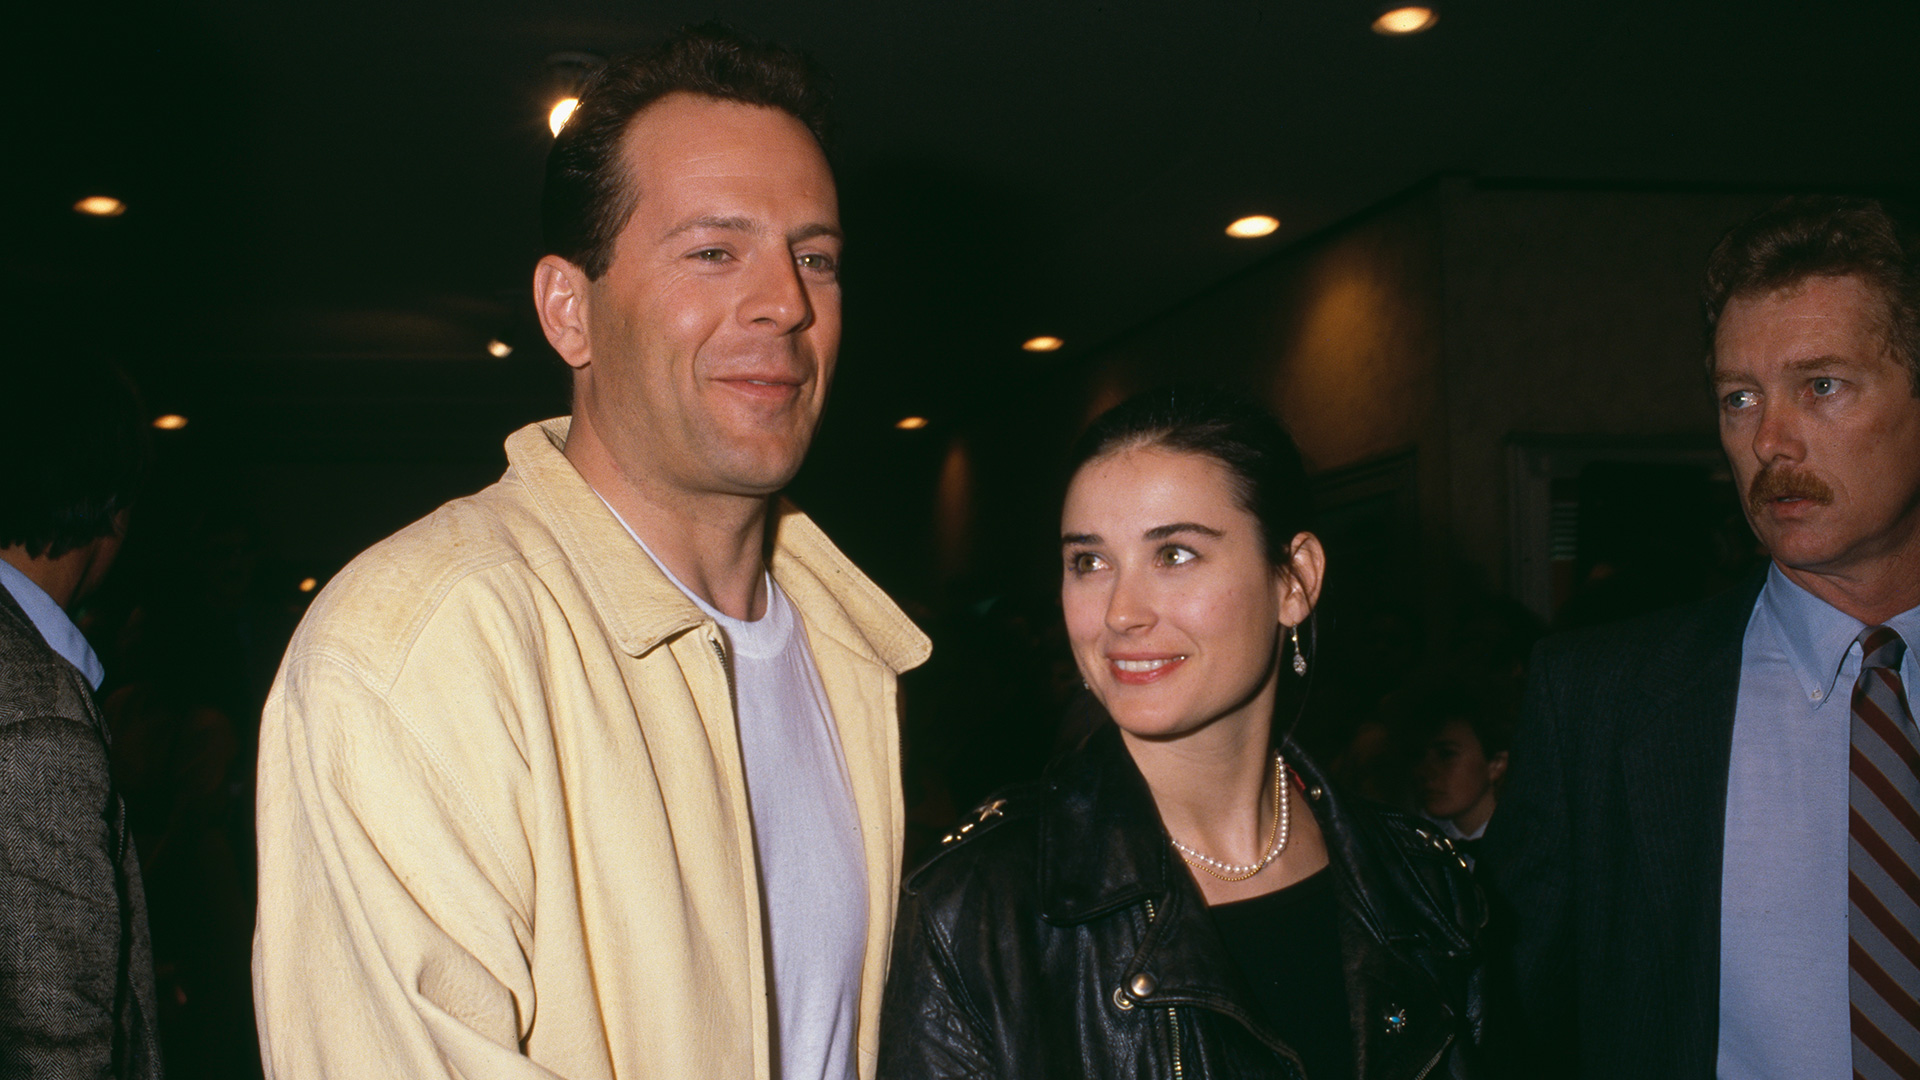 Junto a Bruce Willis constituyÃ³ una de las parejas top de Hollywood. Tuvieron tres hijas. (Getty Images)